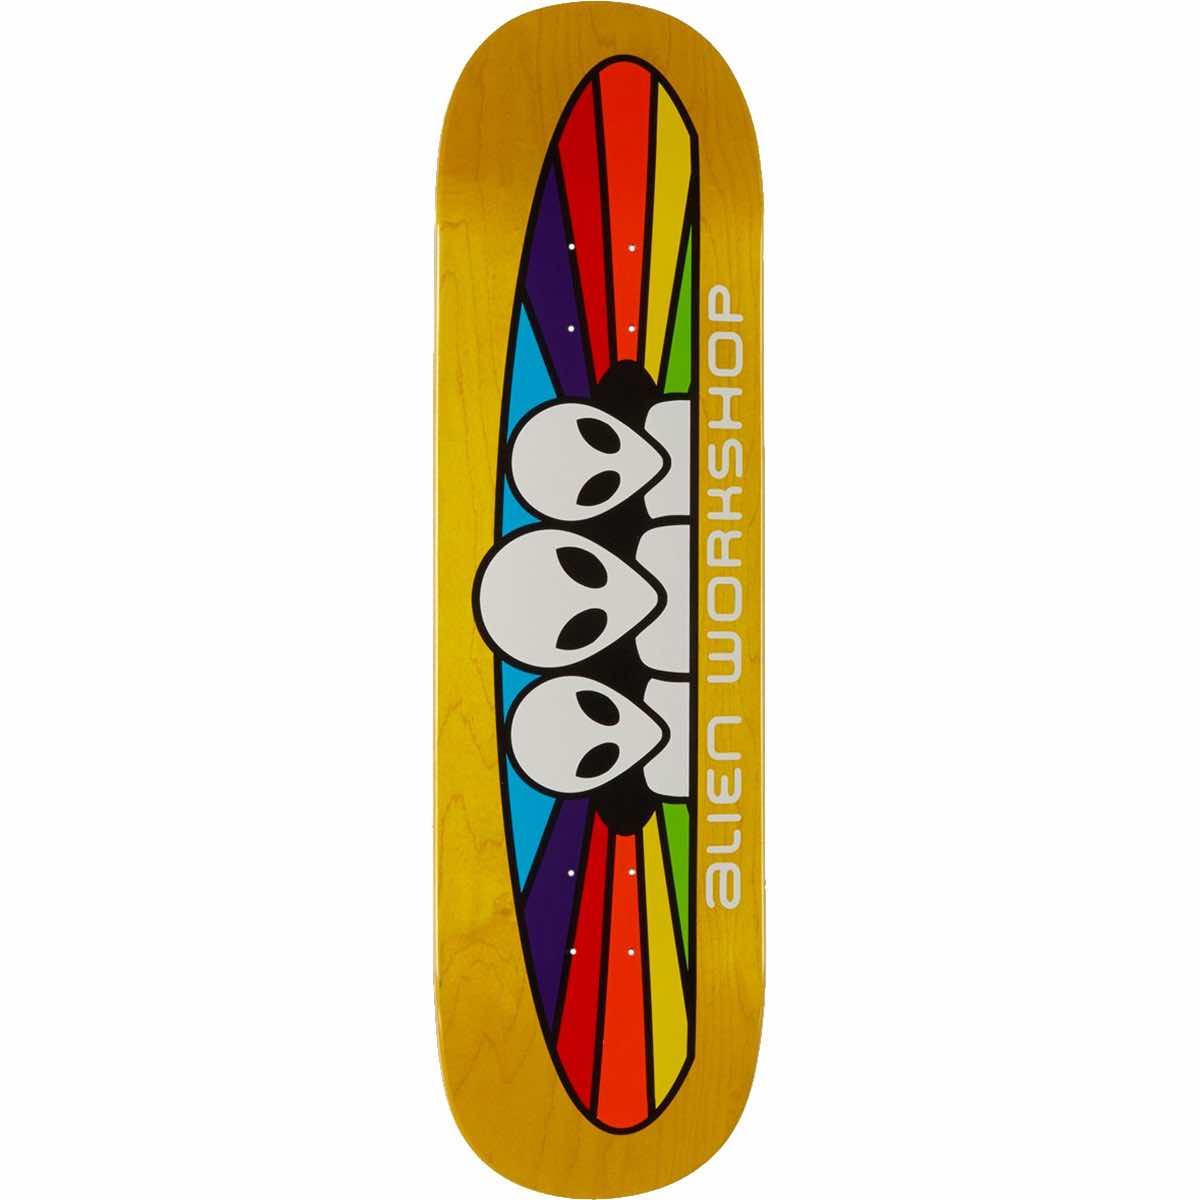 ALIEN WORKSHOP Skateboard Deck SPECTRUM LG 8.25" assorted colors 